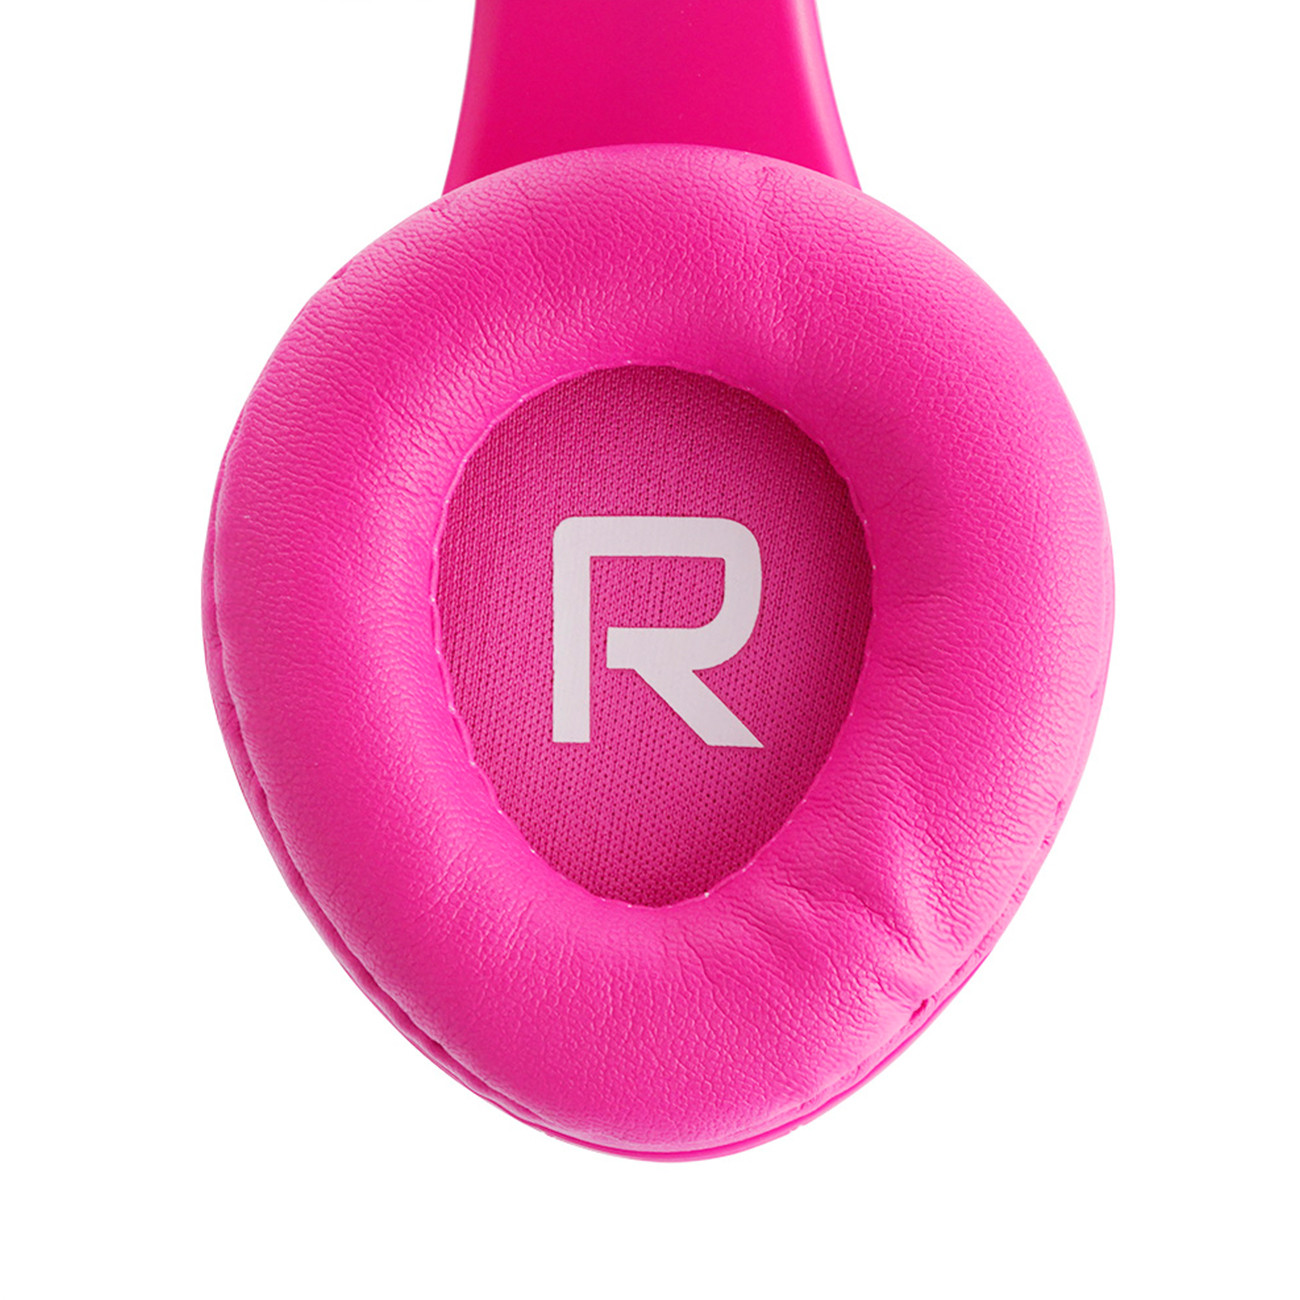 POWERLOCUS P2 für Kinder, Over-ear Kopfhörer Rosa Bluetooth